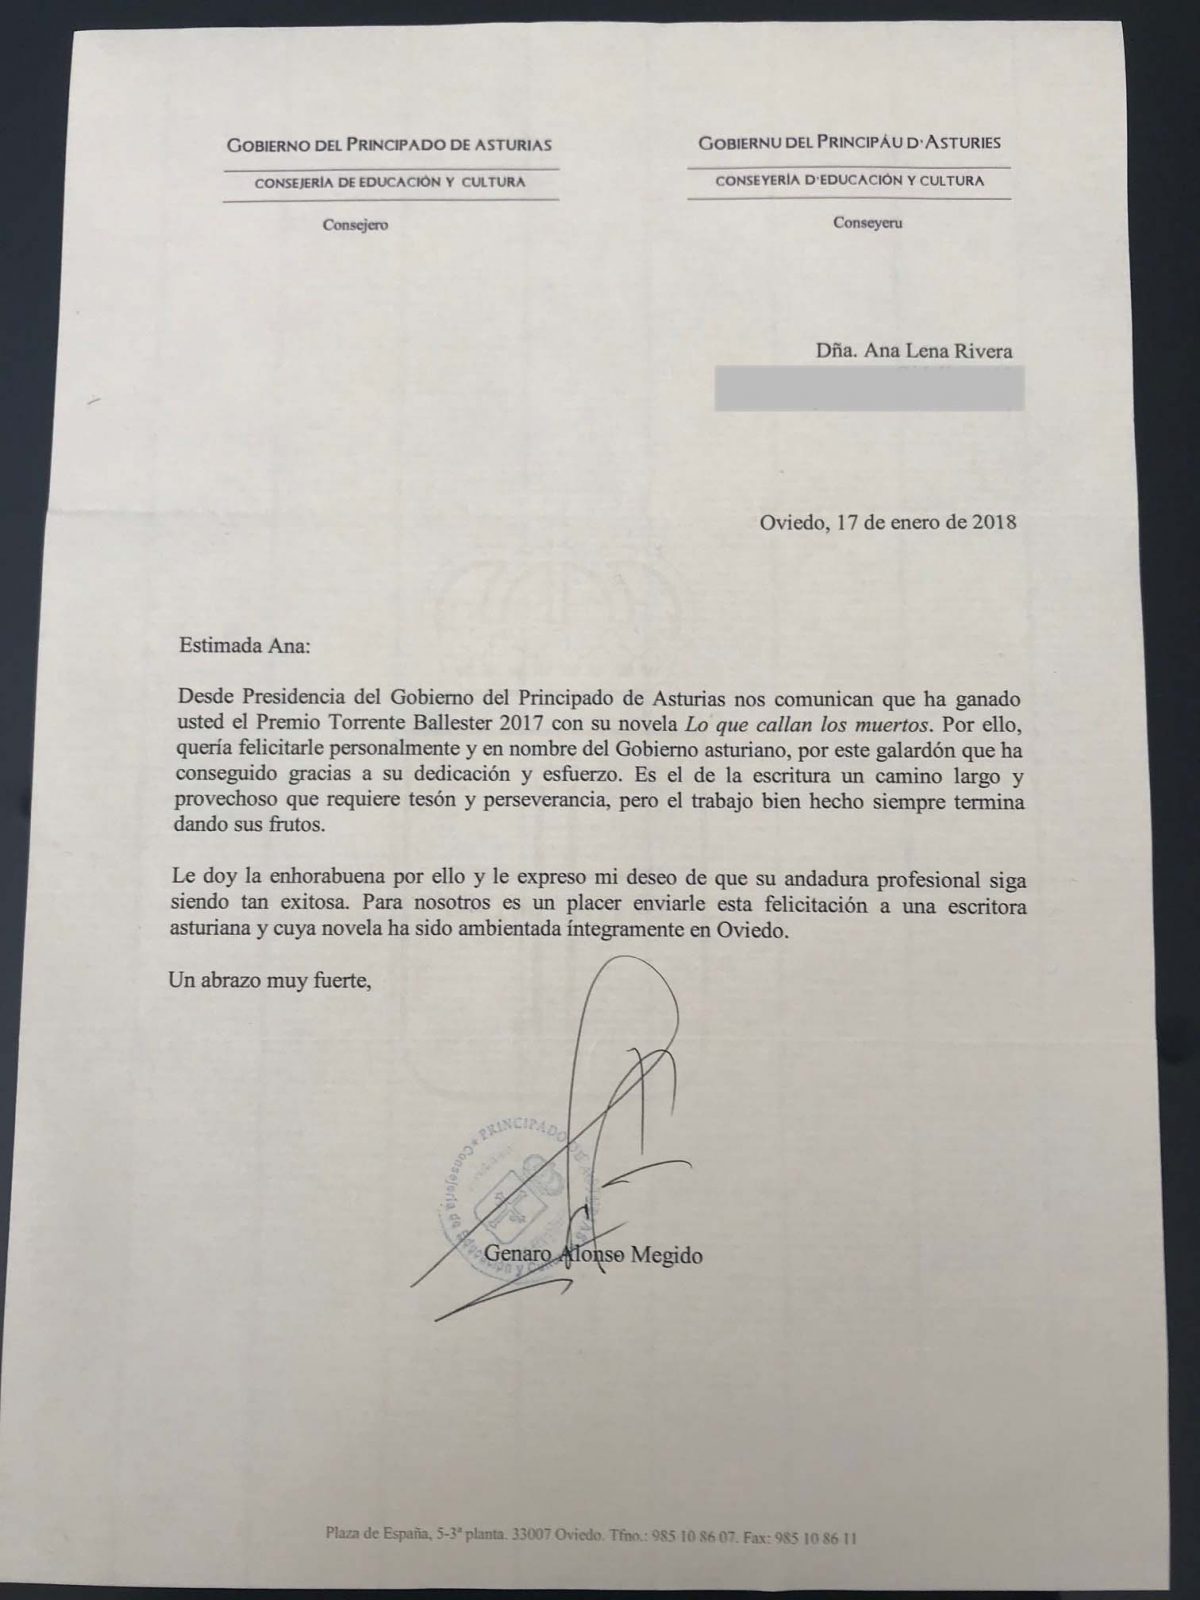 Carta de agradecimiento del Principado de Asturias - Ana 